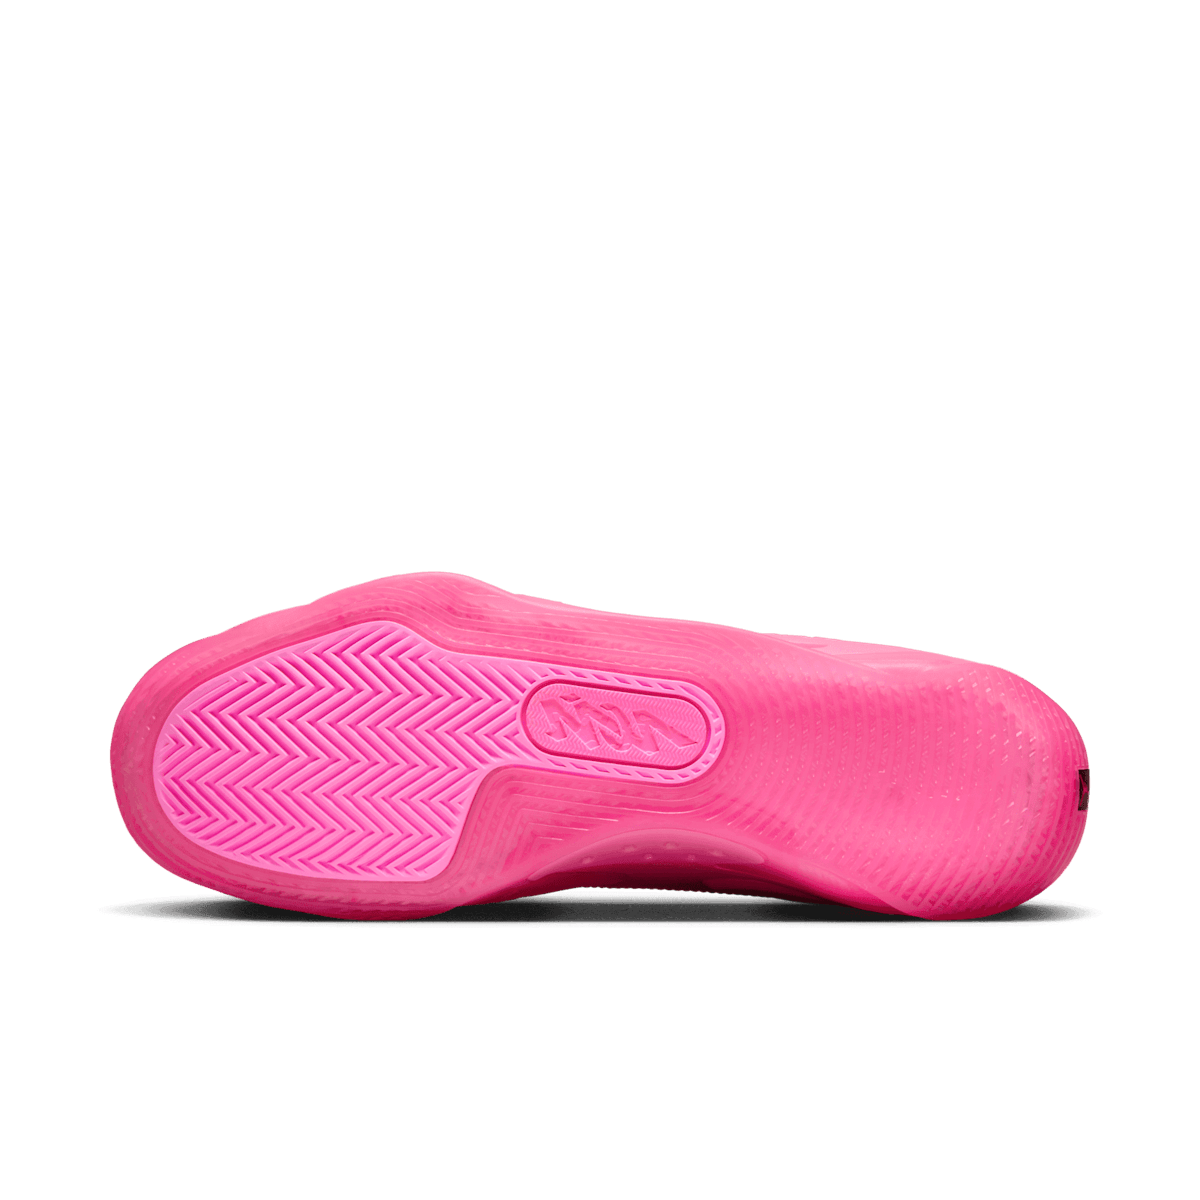 Jordan Zion 3 Pink Lotus - DR0675-600 Raffles and Release Date